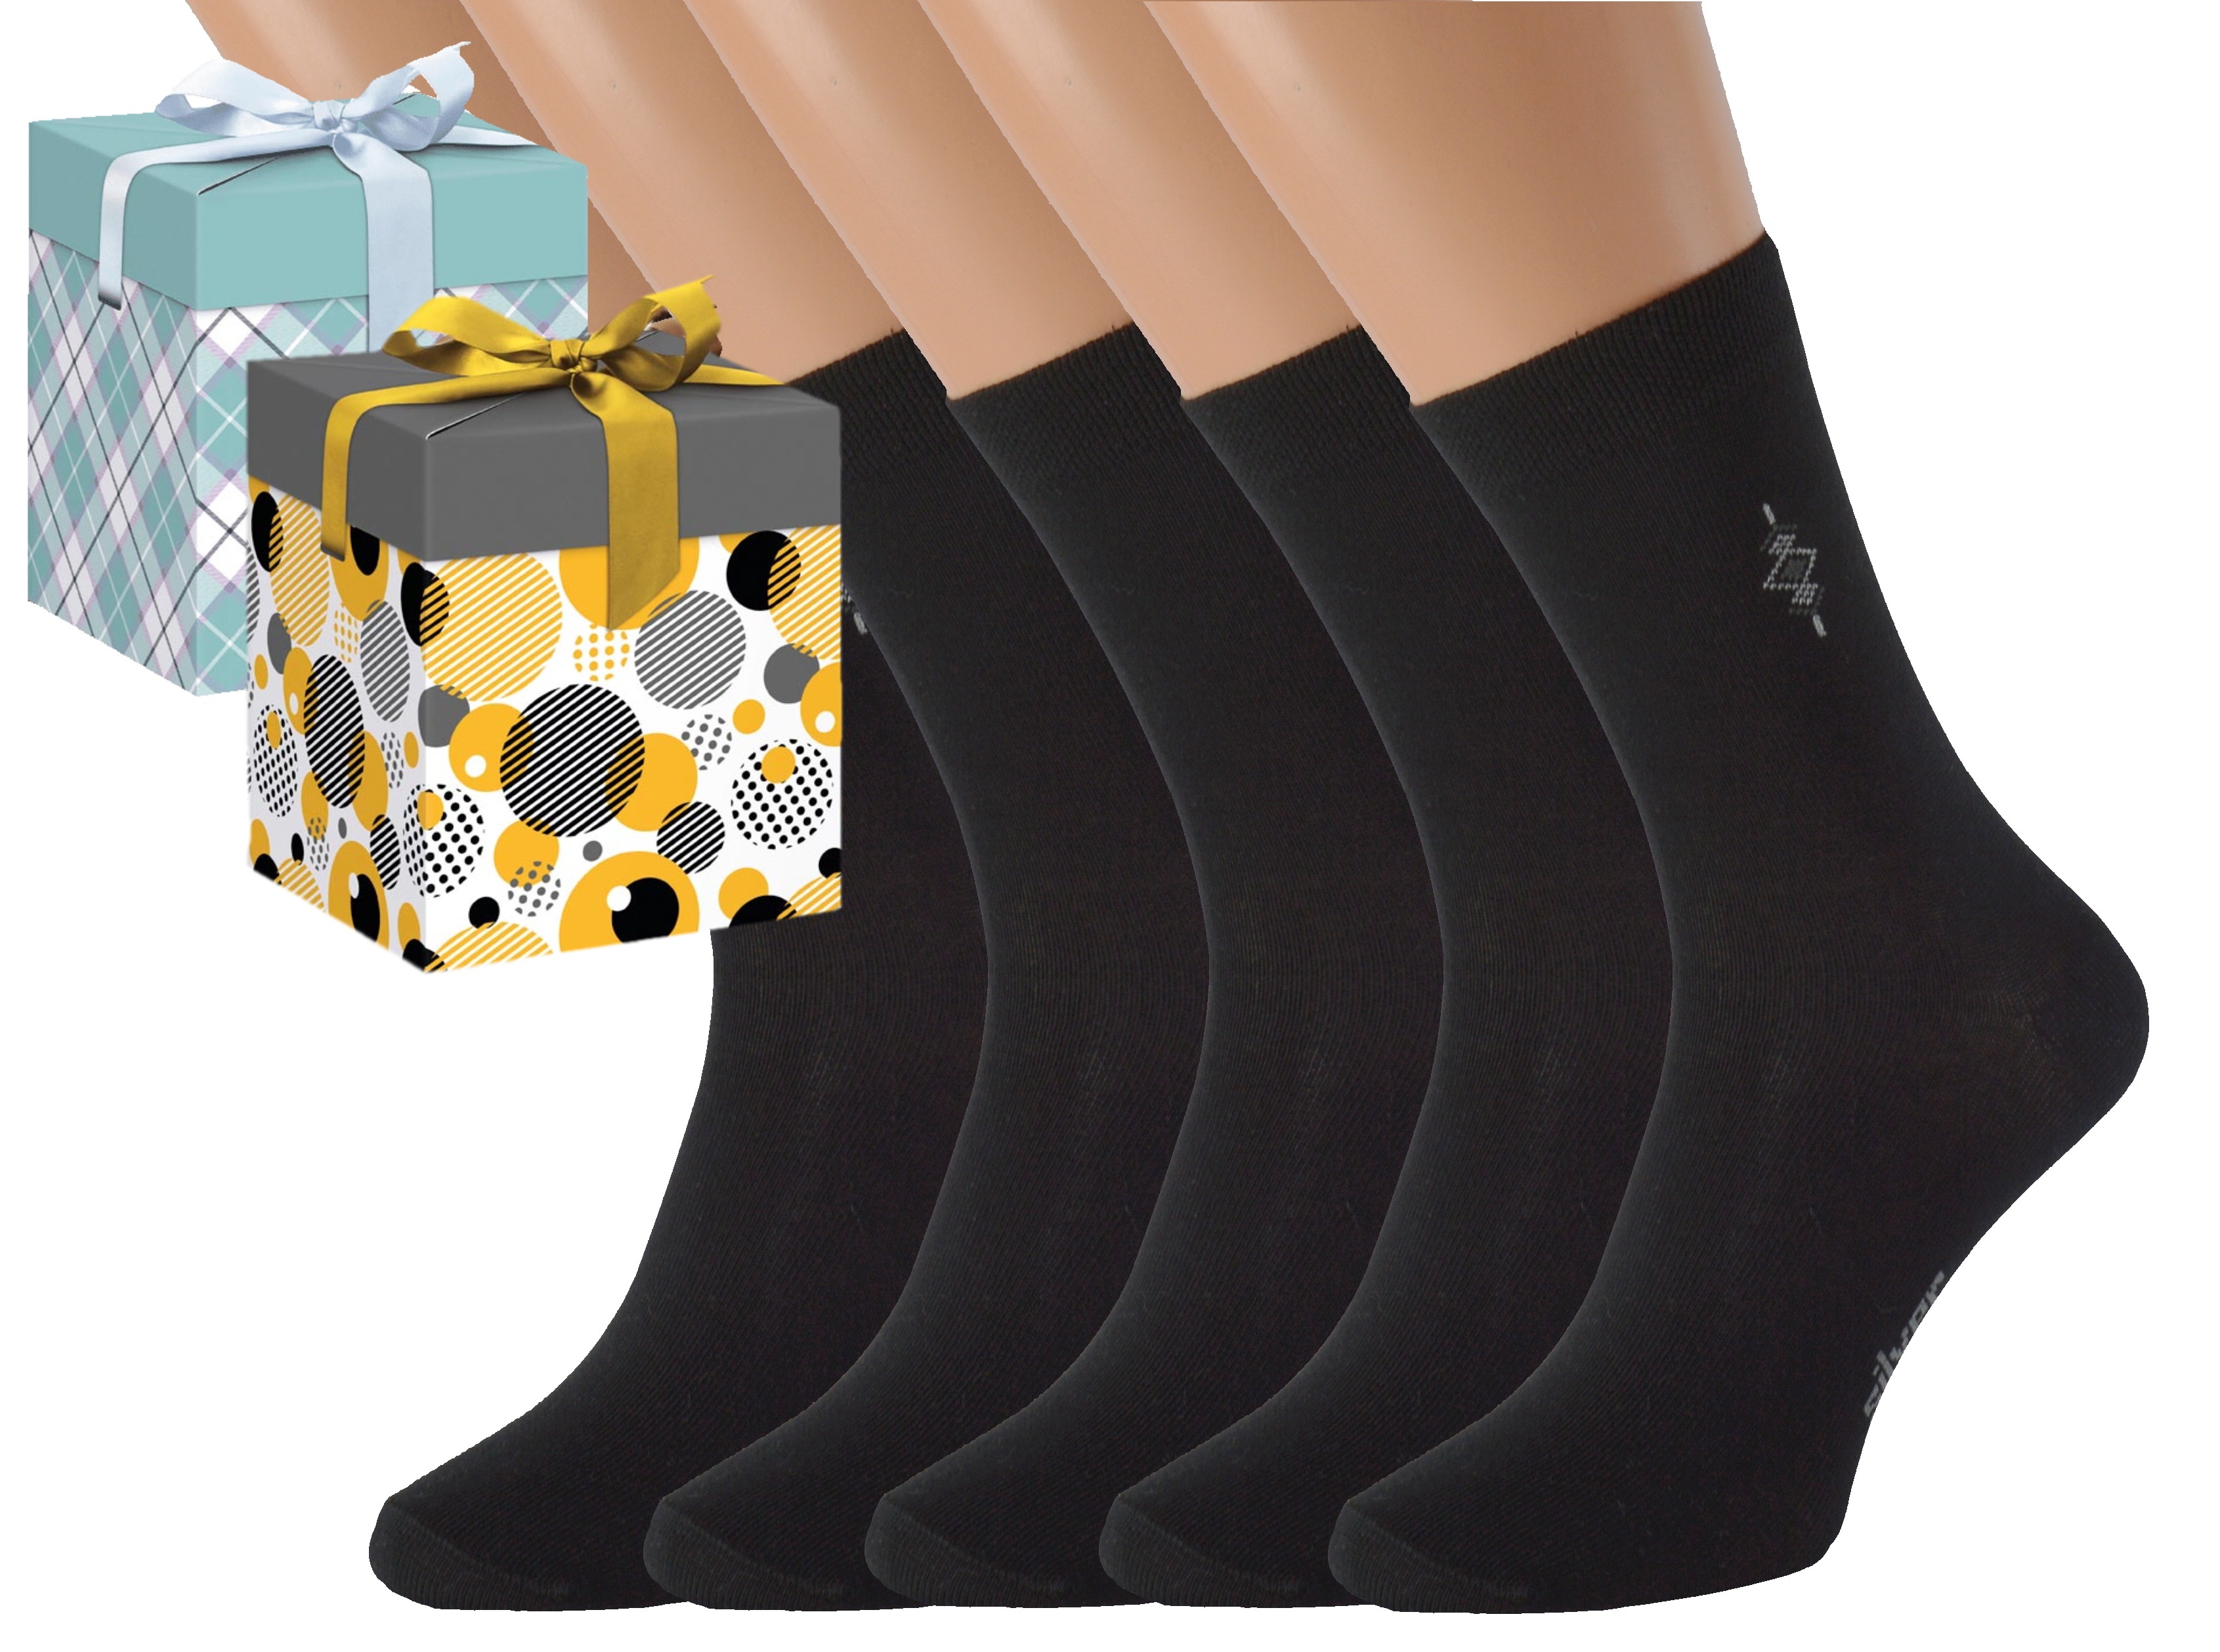 Dárkové balení 5 párů společenských ponožek BOBOLYC Barva: Černé, Velikost: EUR 35-38 (UK 3-5), Zvolte variantu dárkového balení: Modrá s oky